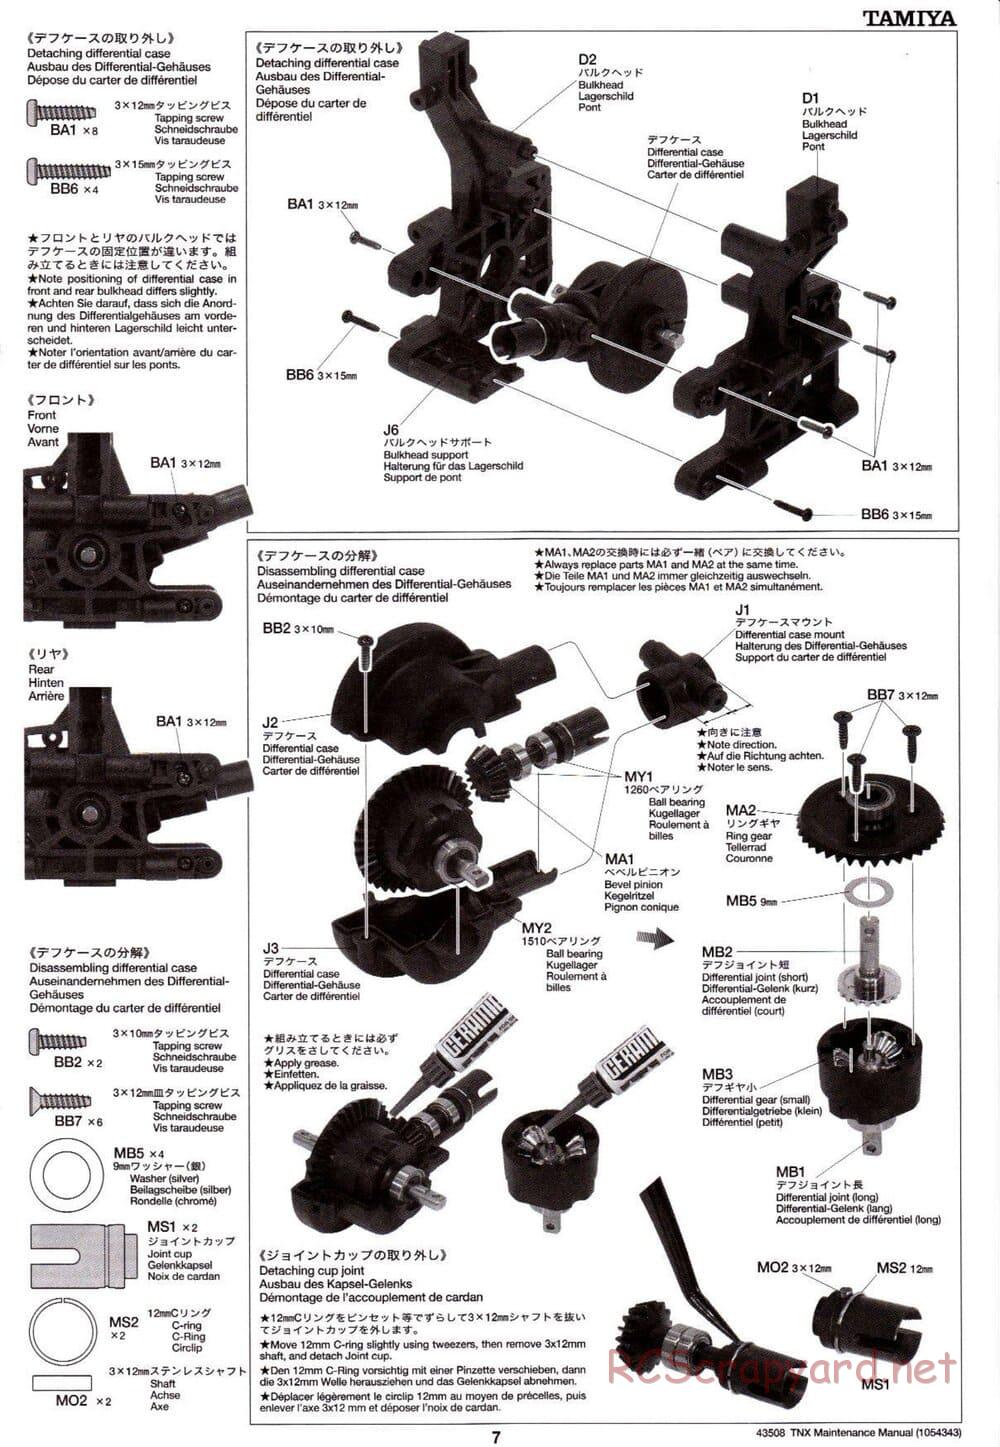 Tamiya - TNX - Maintenance Manual - Page 7